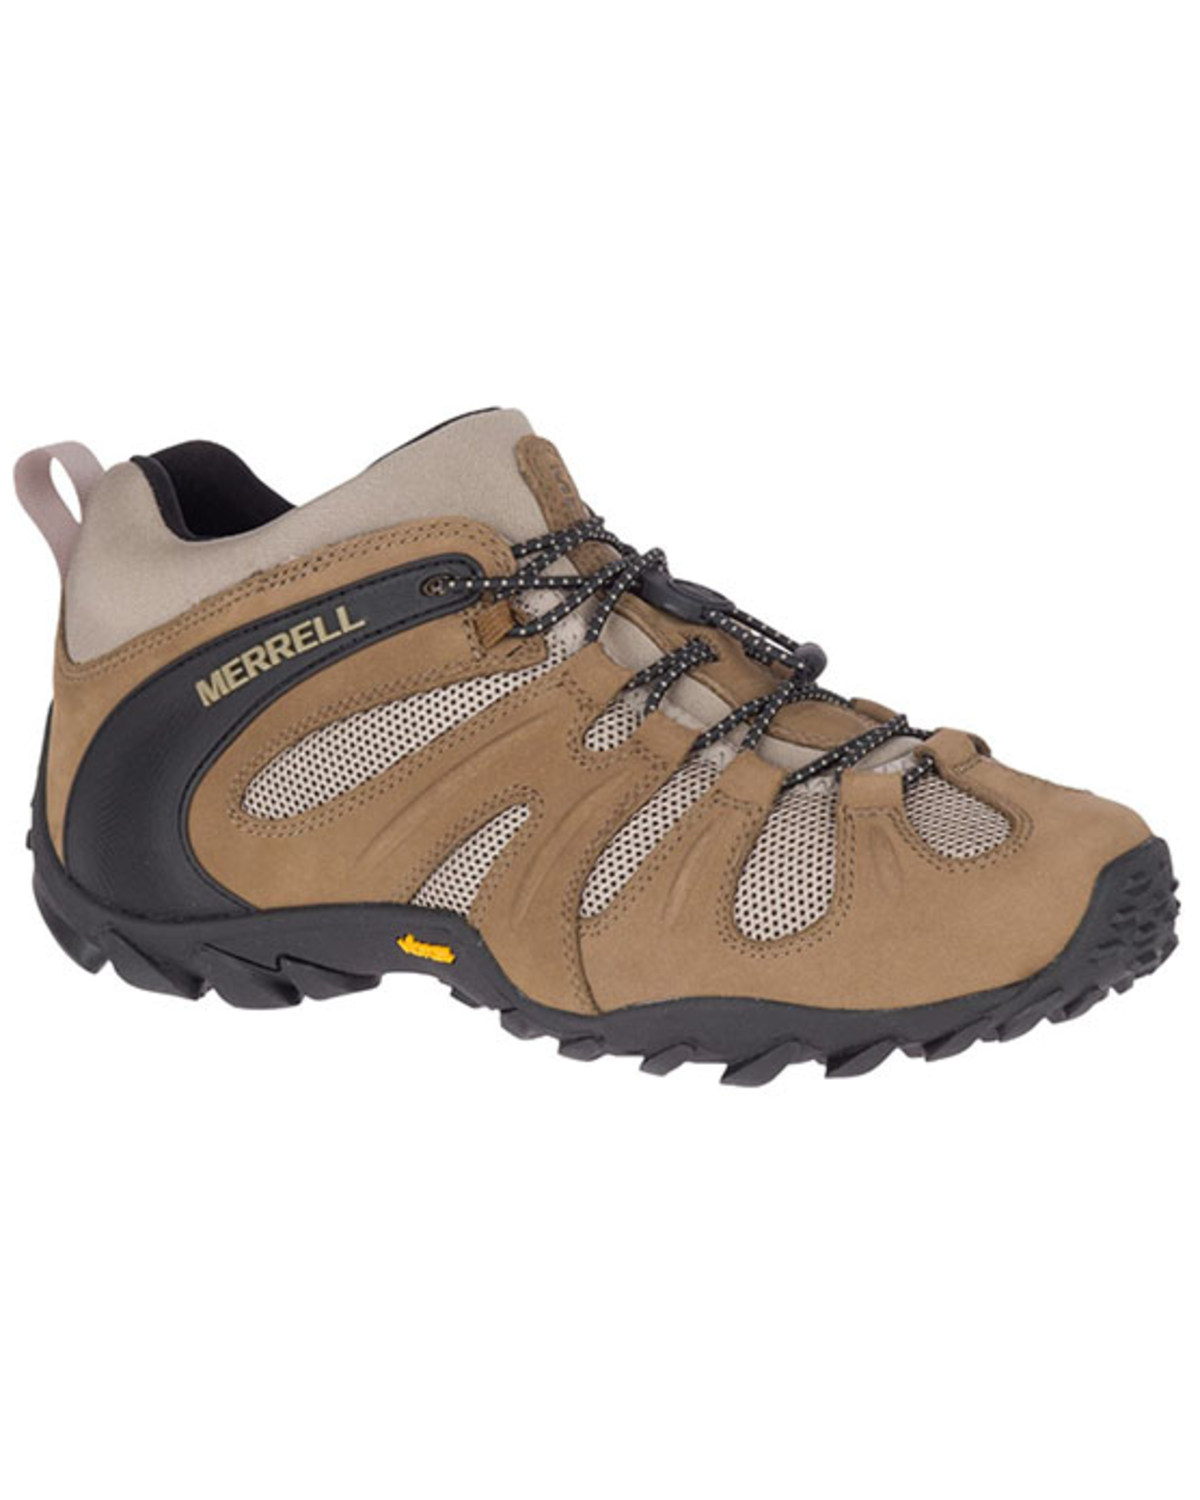 Merrell Men's Chameleon Hiking Boots - Soft Toe